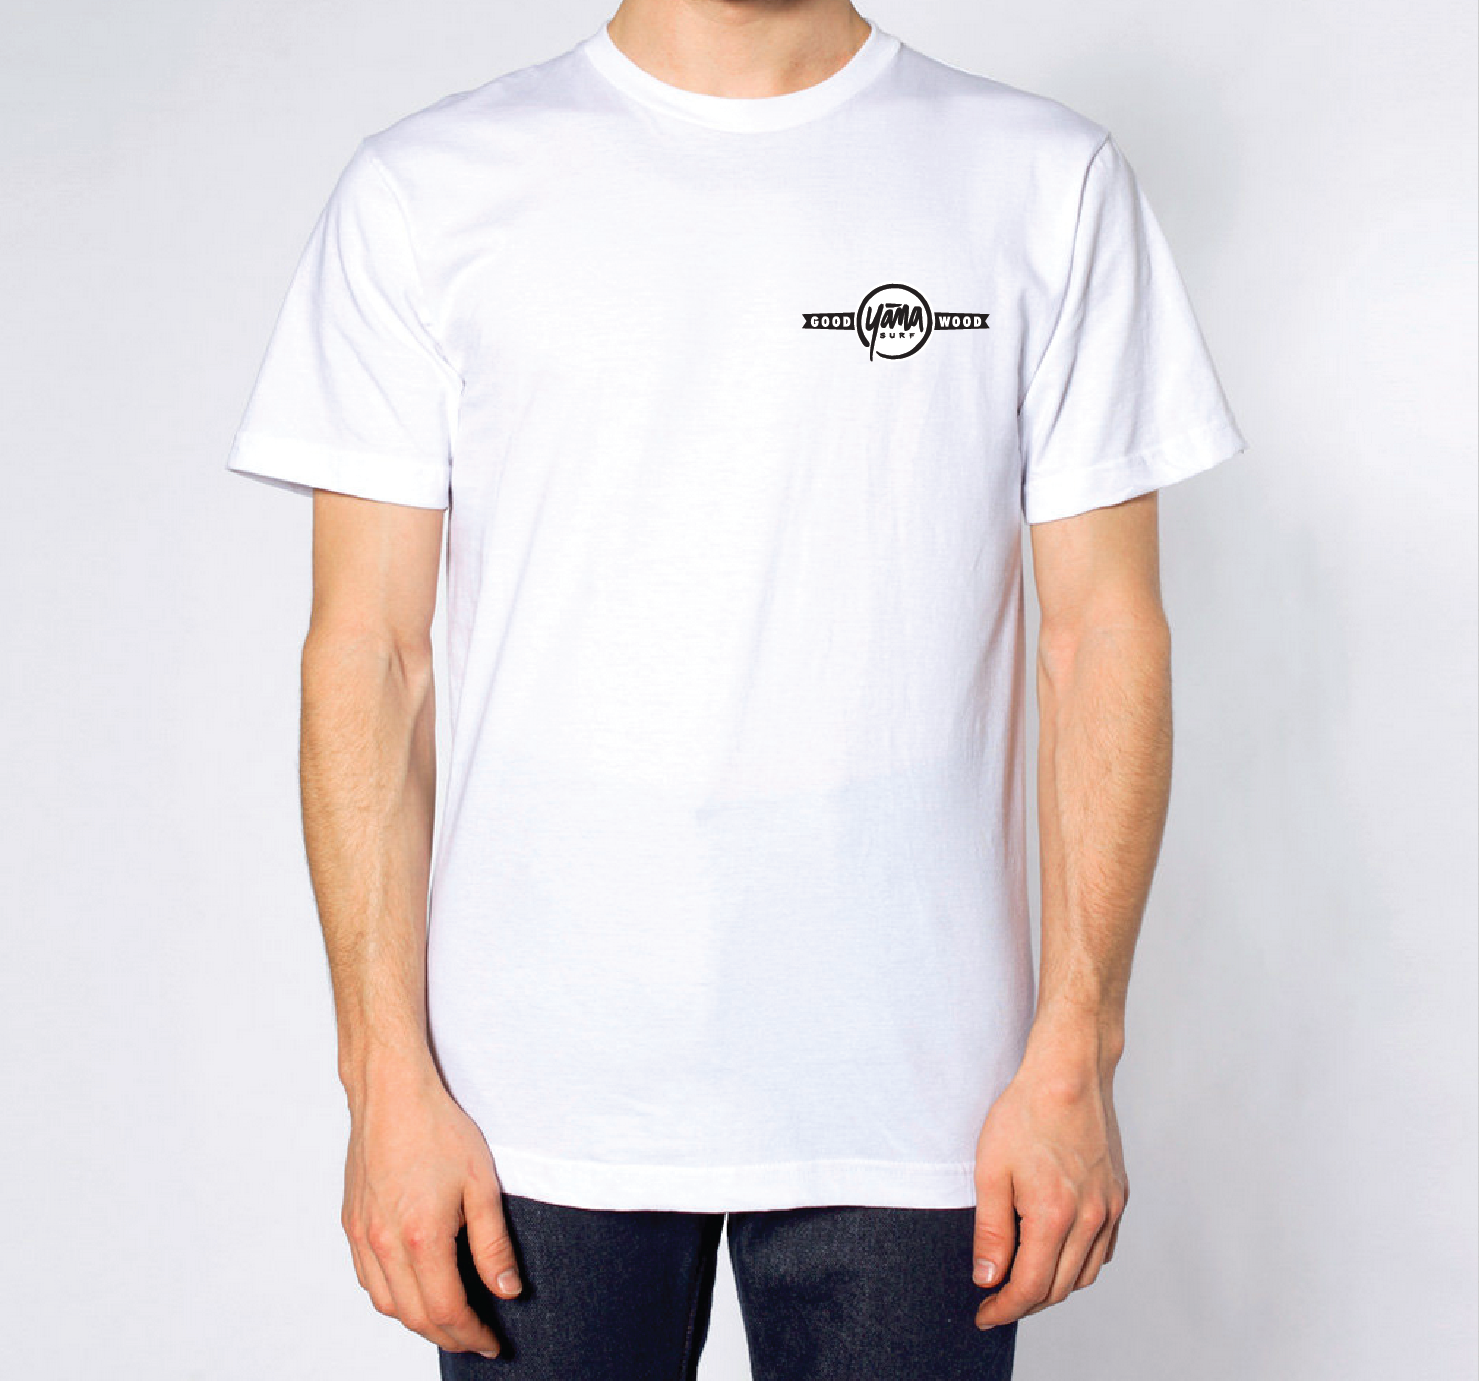 Hip Surf T Shirts for Men I Surf T Shirts - YanaSurf.com